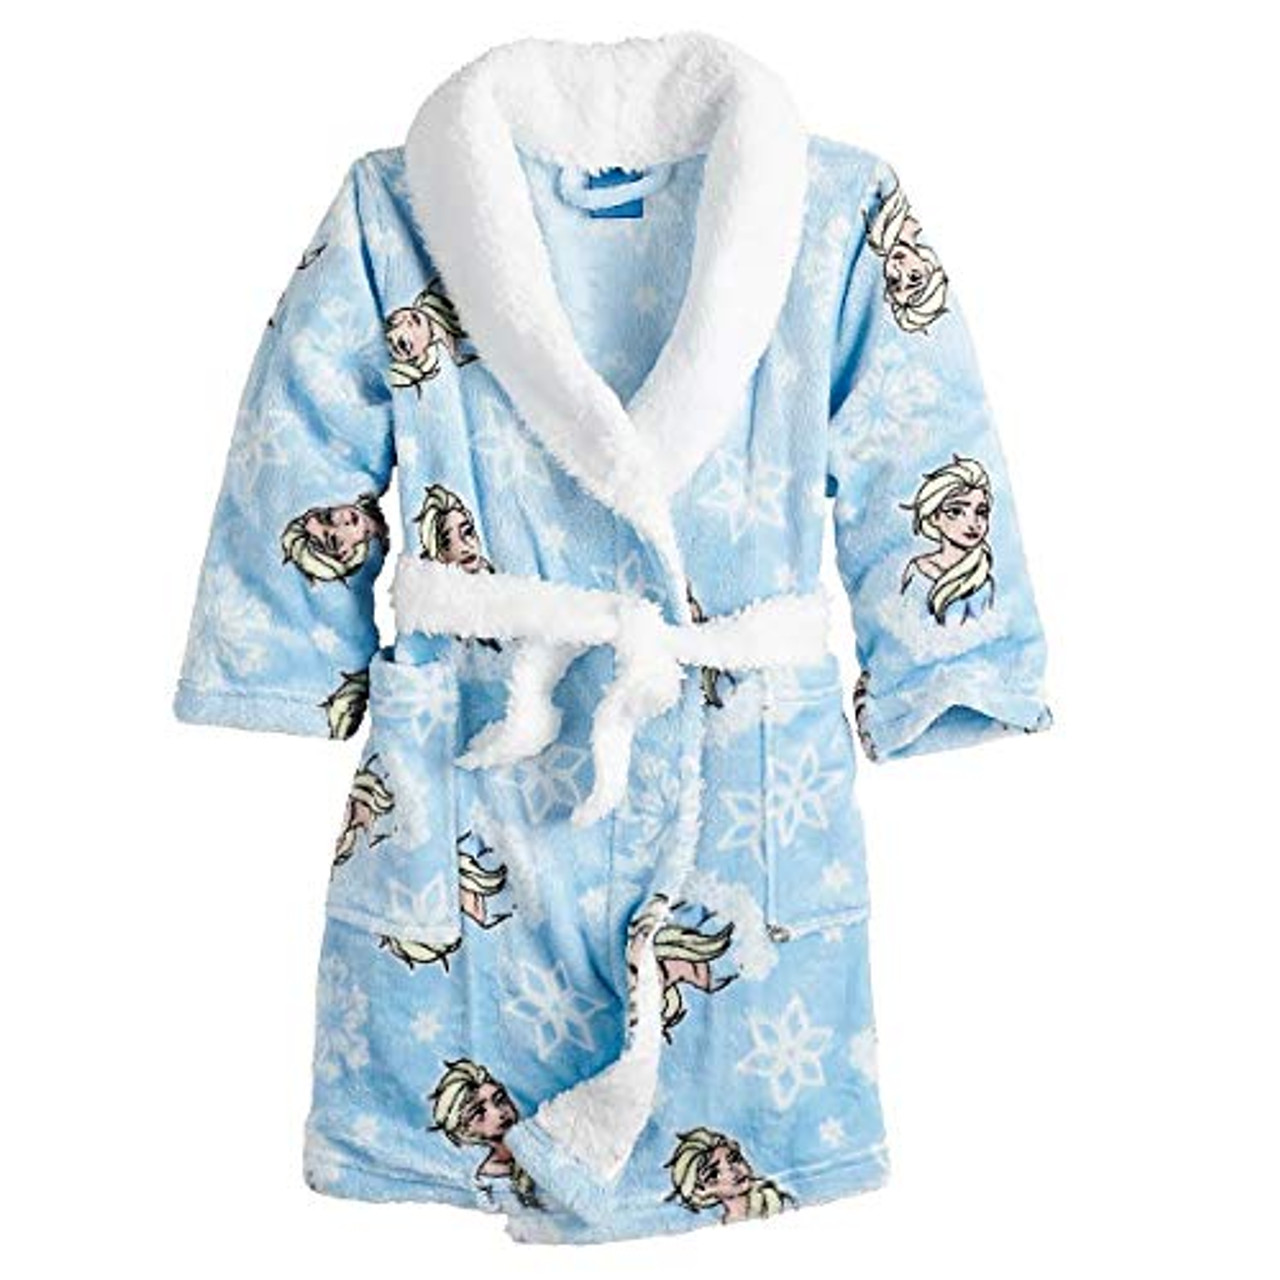 Disney FROZEN Elsa Snuggie Kids Blanket Robe Blue Soft Fleece Great! 